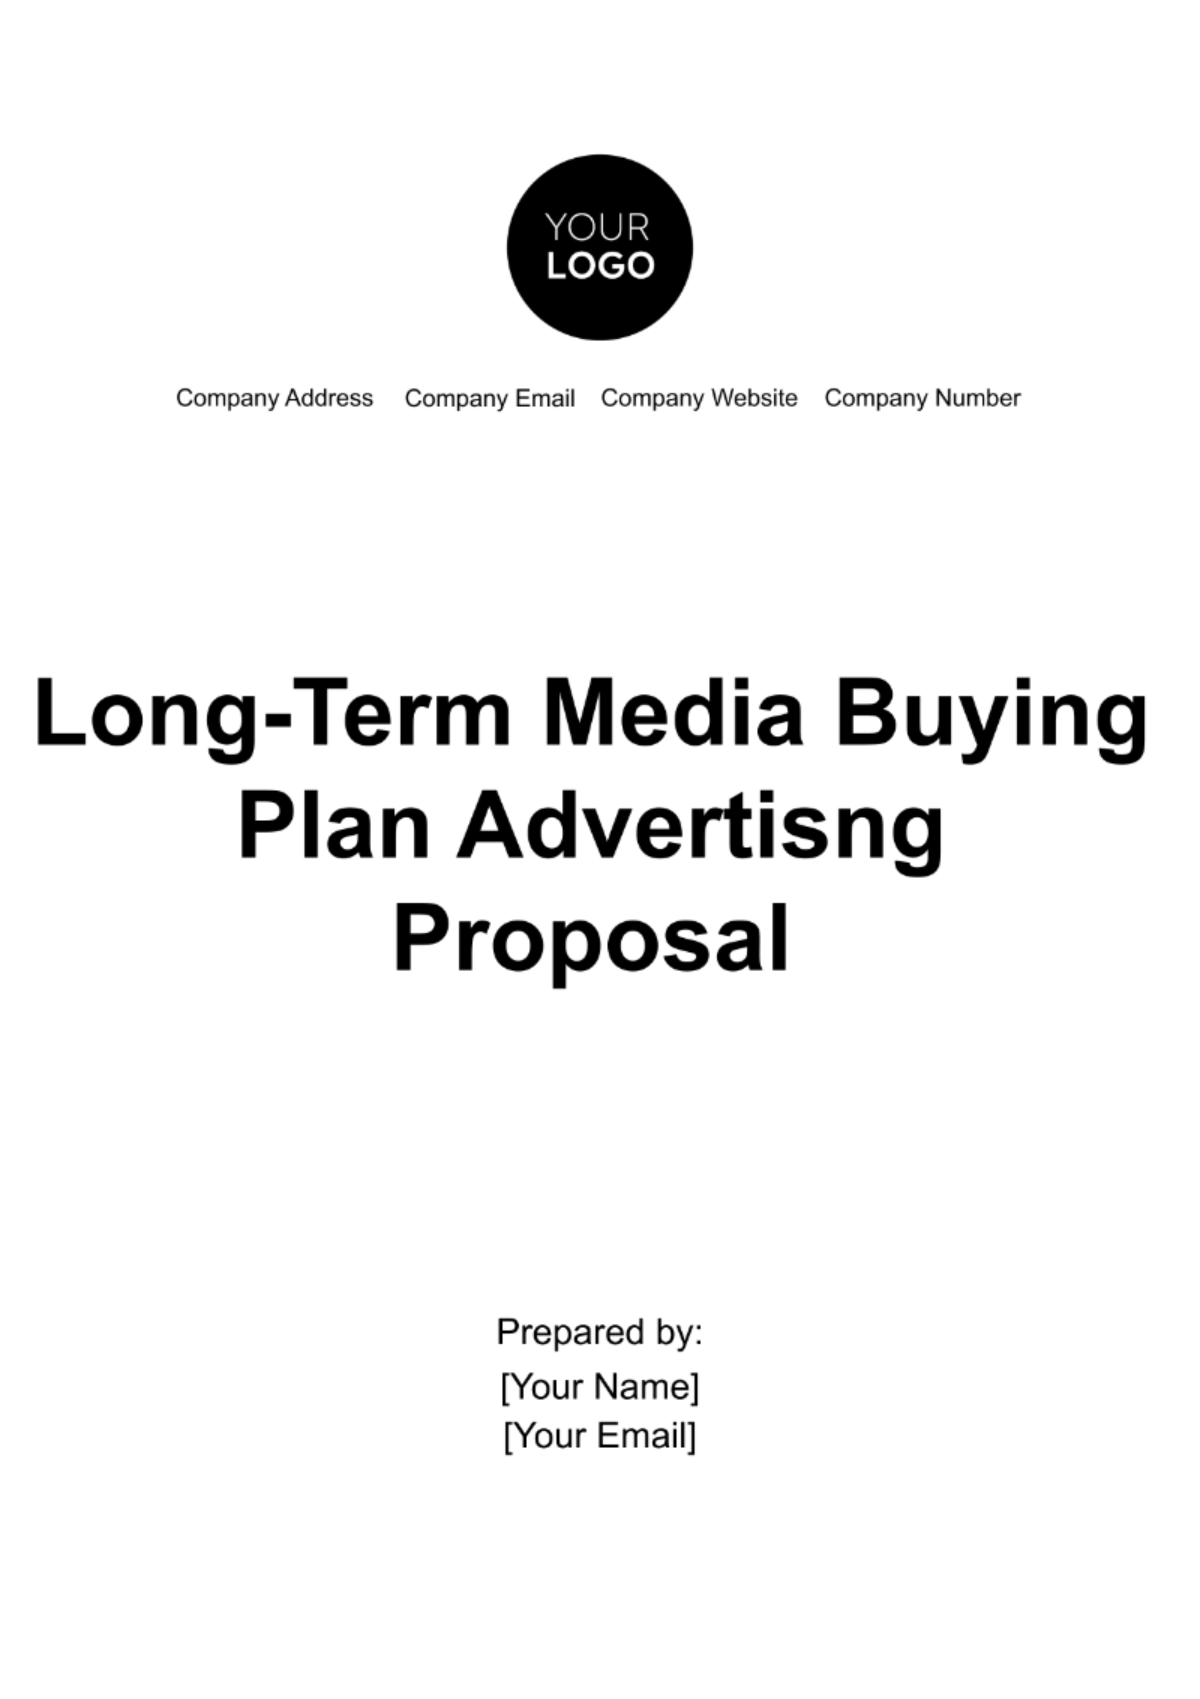 Long-Term Media Buying Plan Advertising Proposal Template